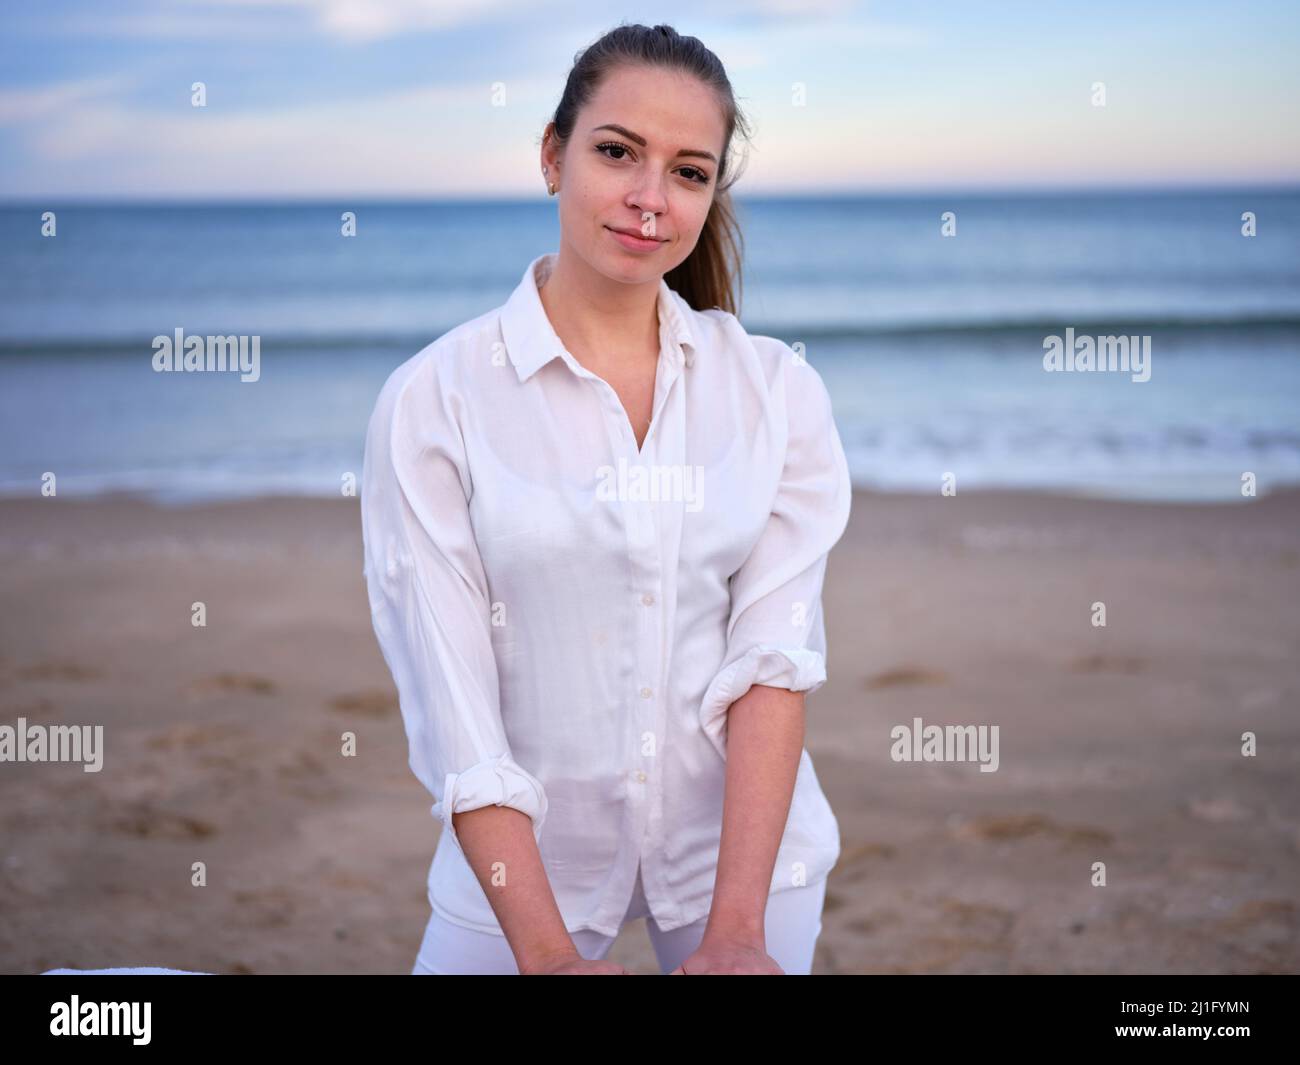 Eine junge, weiß gekleidete Chiromassage-Therapeutin, die an einem Strand in Valencia mit dem Meer im Hintergrund steht. Stockfoto